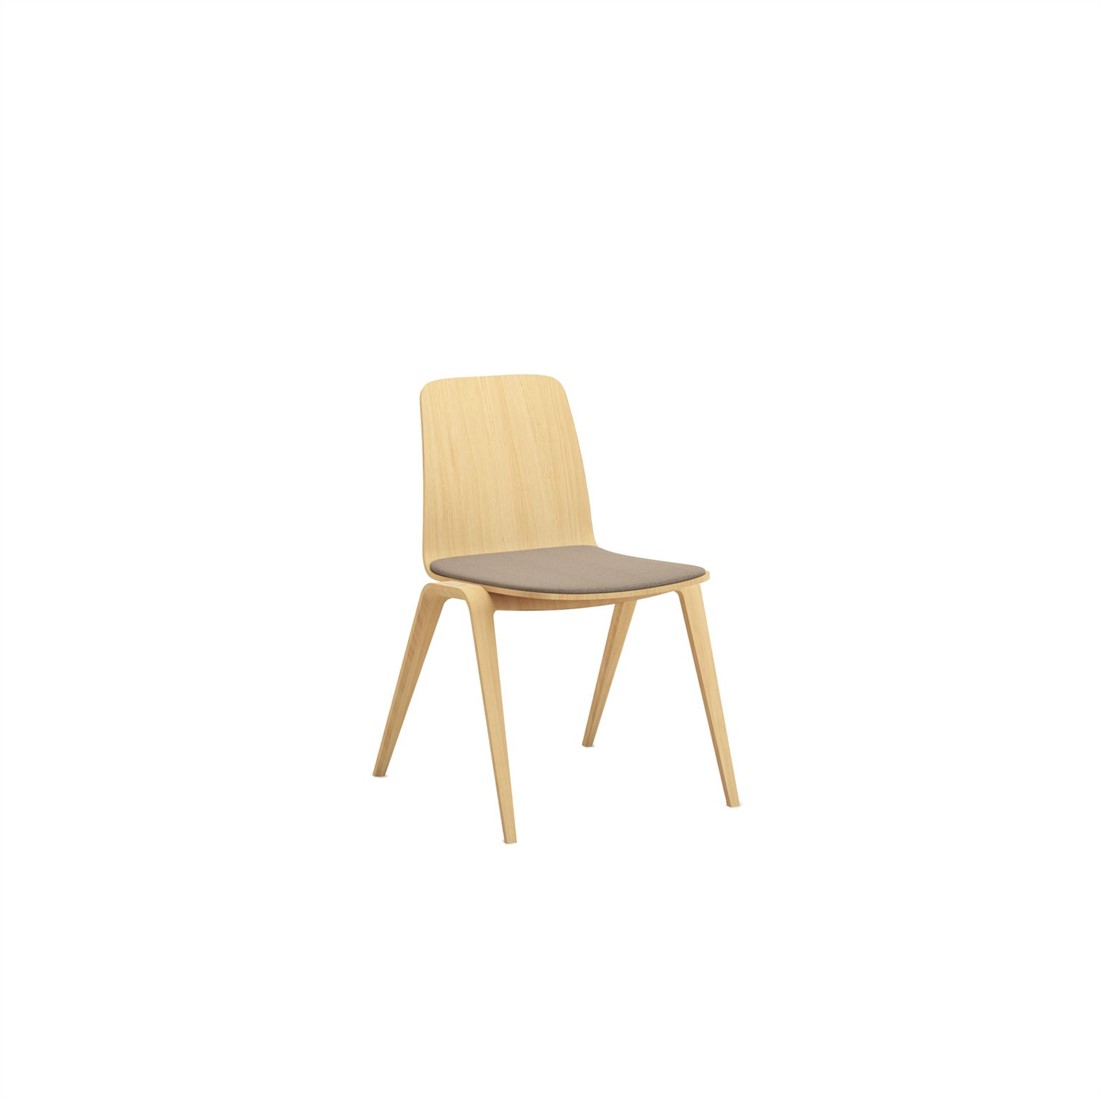 Woodstock zit stof geheel houten verticaal stapelbare stoel met gestoffeerde zit bij FP Collection